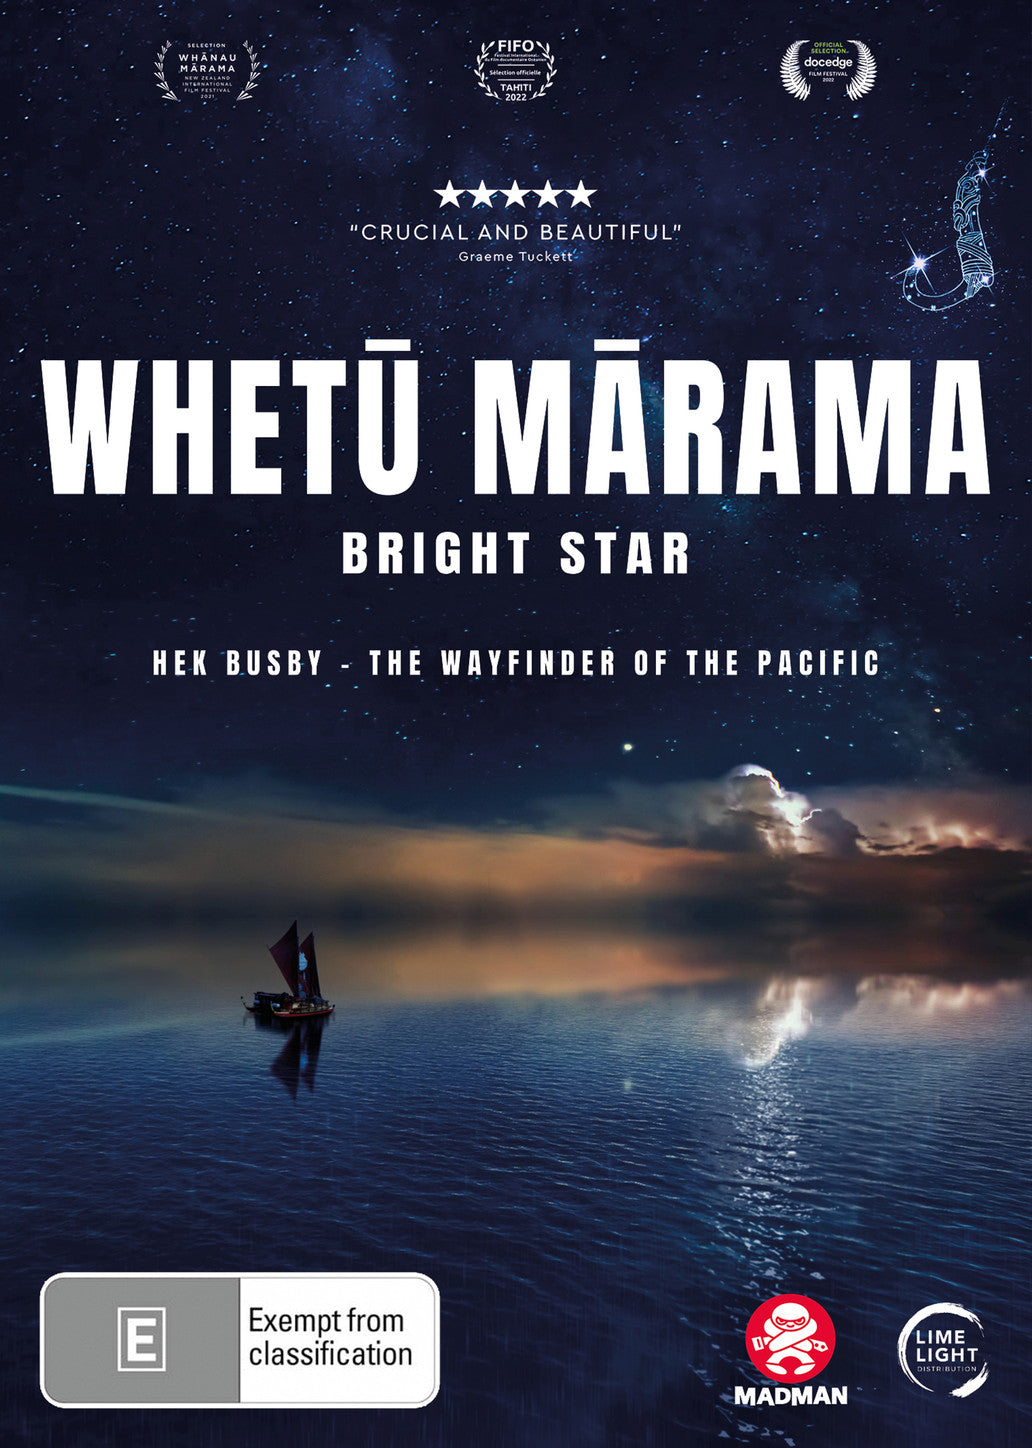 WHETU MARAMA - BRIGHT STAR